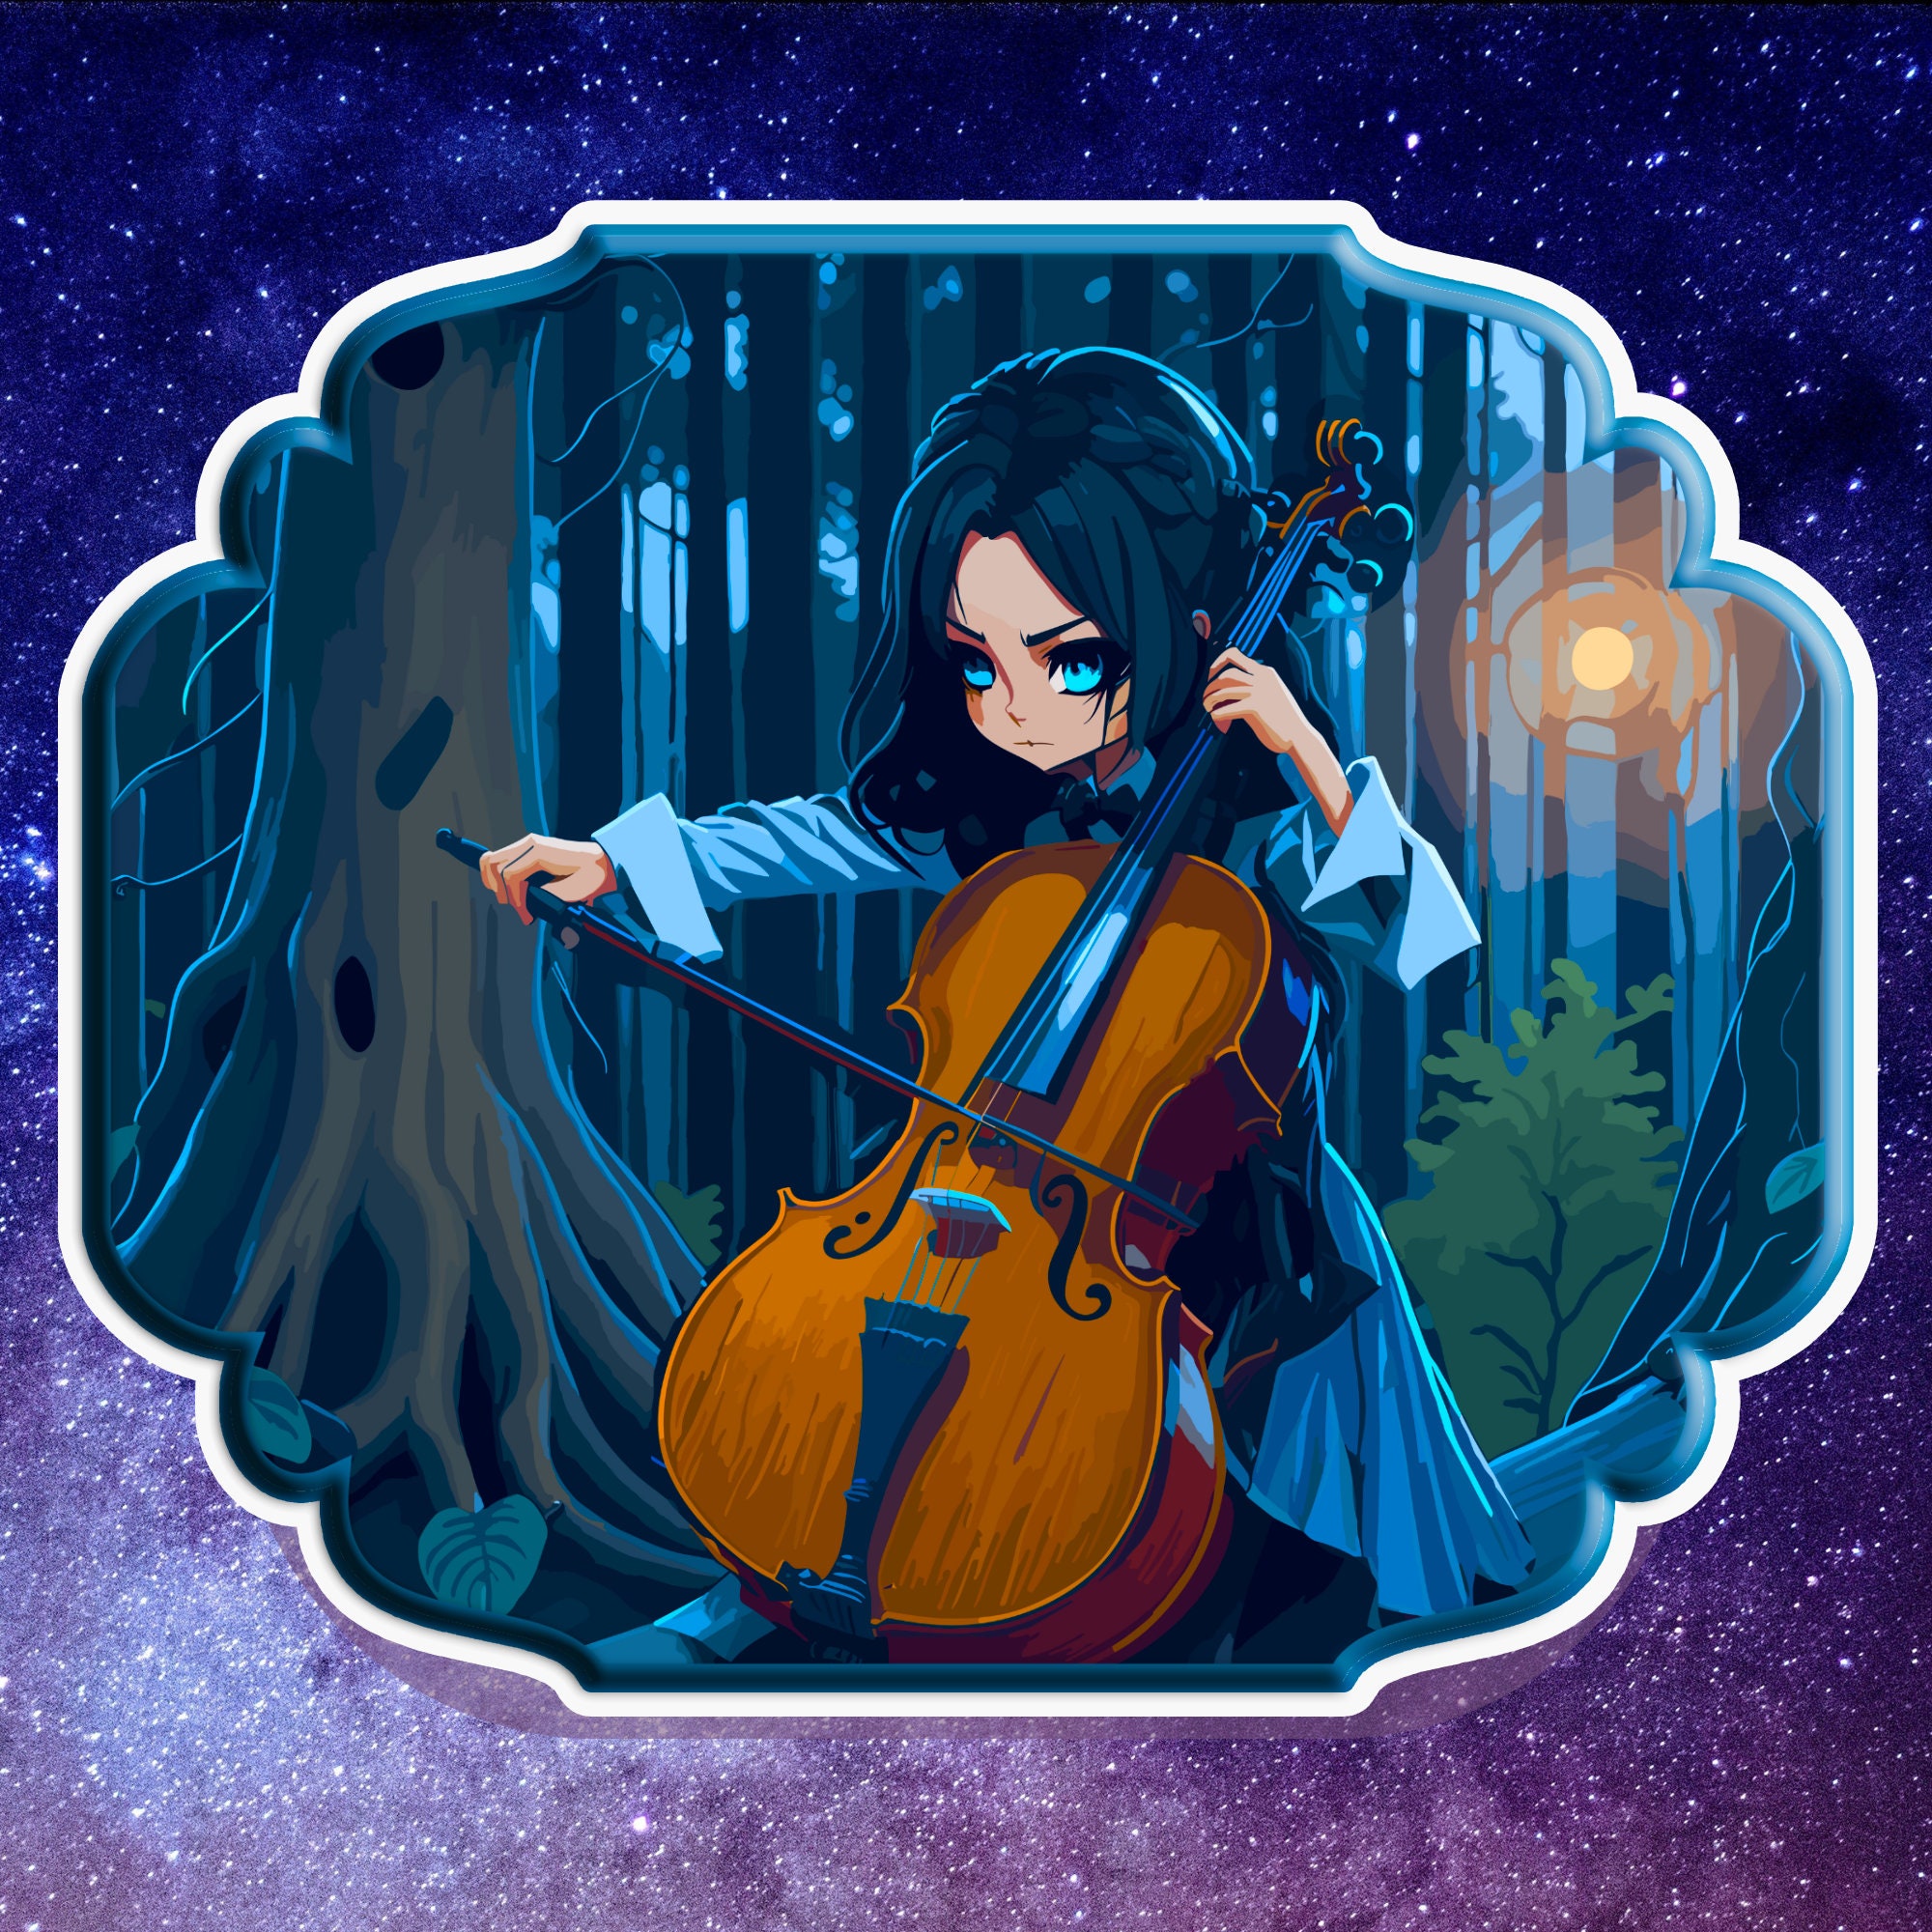 Anime Cello Music picture